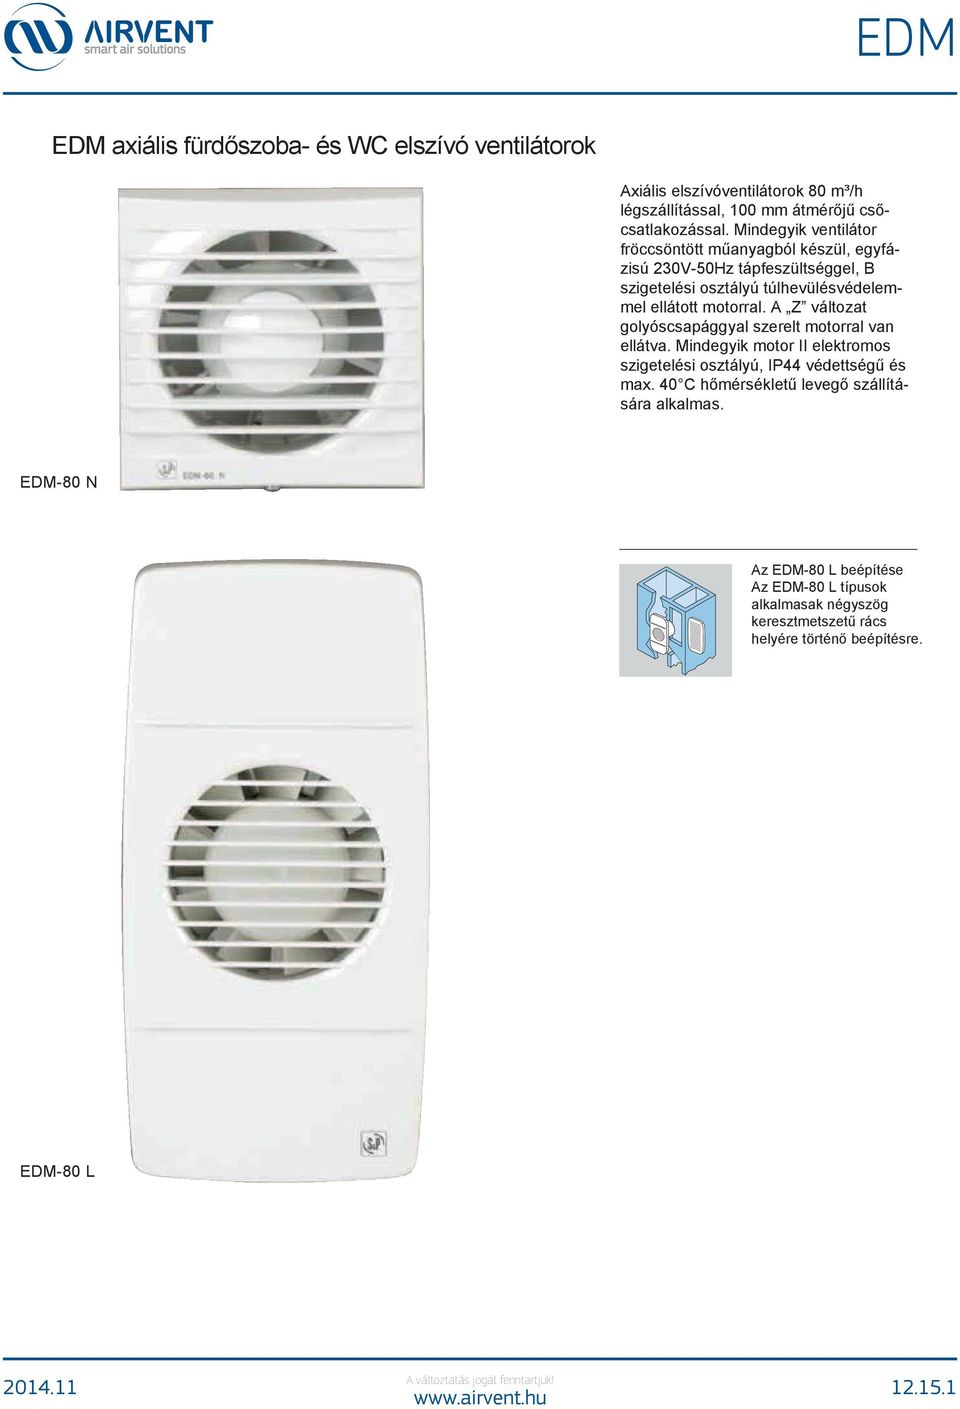 EDM. EDM axiális fürdőszoba- és WC elszívó ventilátorok. Axiális  elszívóventilátorok 80 m³/h légszállítással, 100 mm átmérőjű  csőcsatlakozással. - PDF Free Download